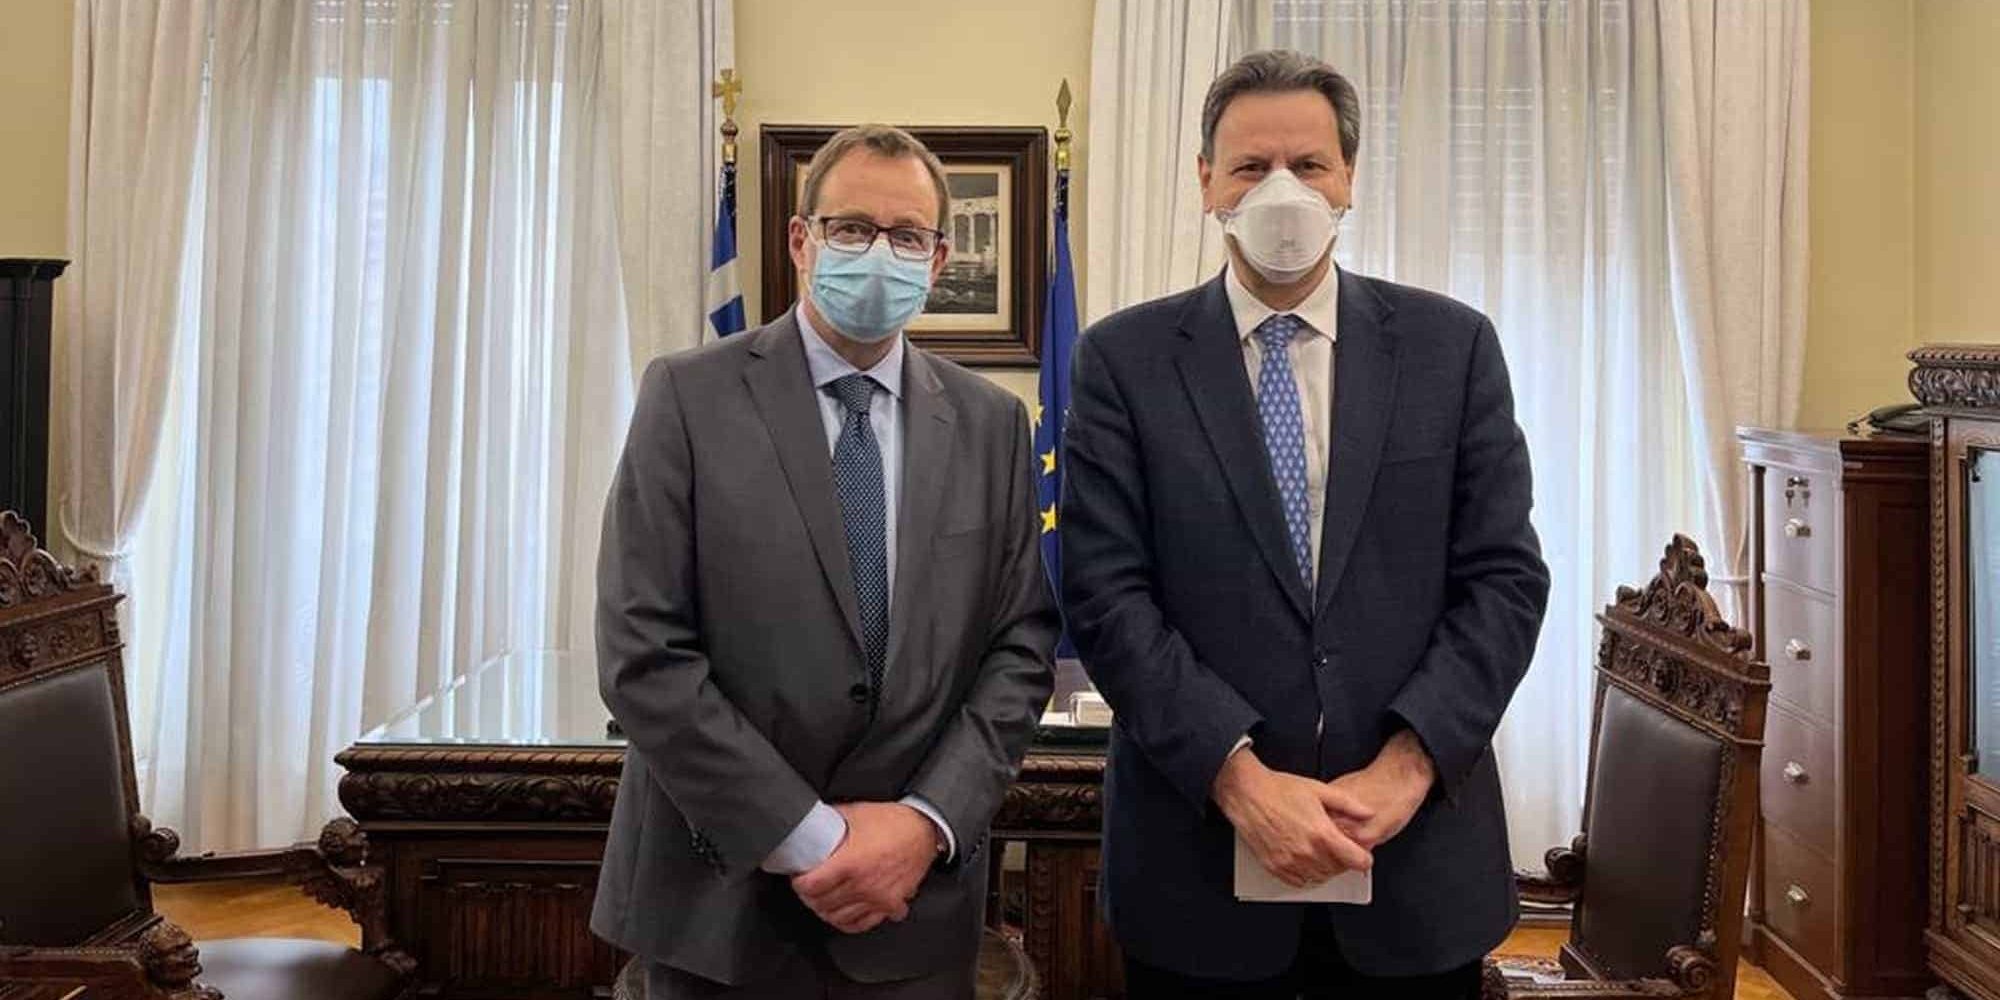 Ο αντιπρόεδρος της ΕΤΕπ Κρίστιαν Κέτελ Τόμσεν και ο αναπληρωτής υπουργός Οικονομικών, Θόδωρος Σκυλακάκης